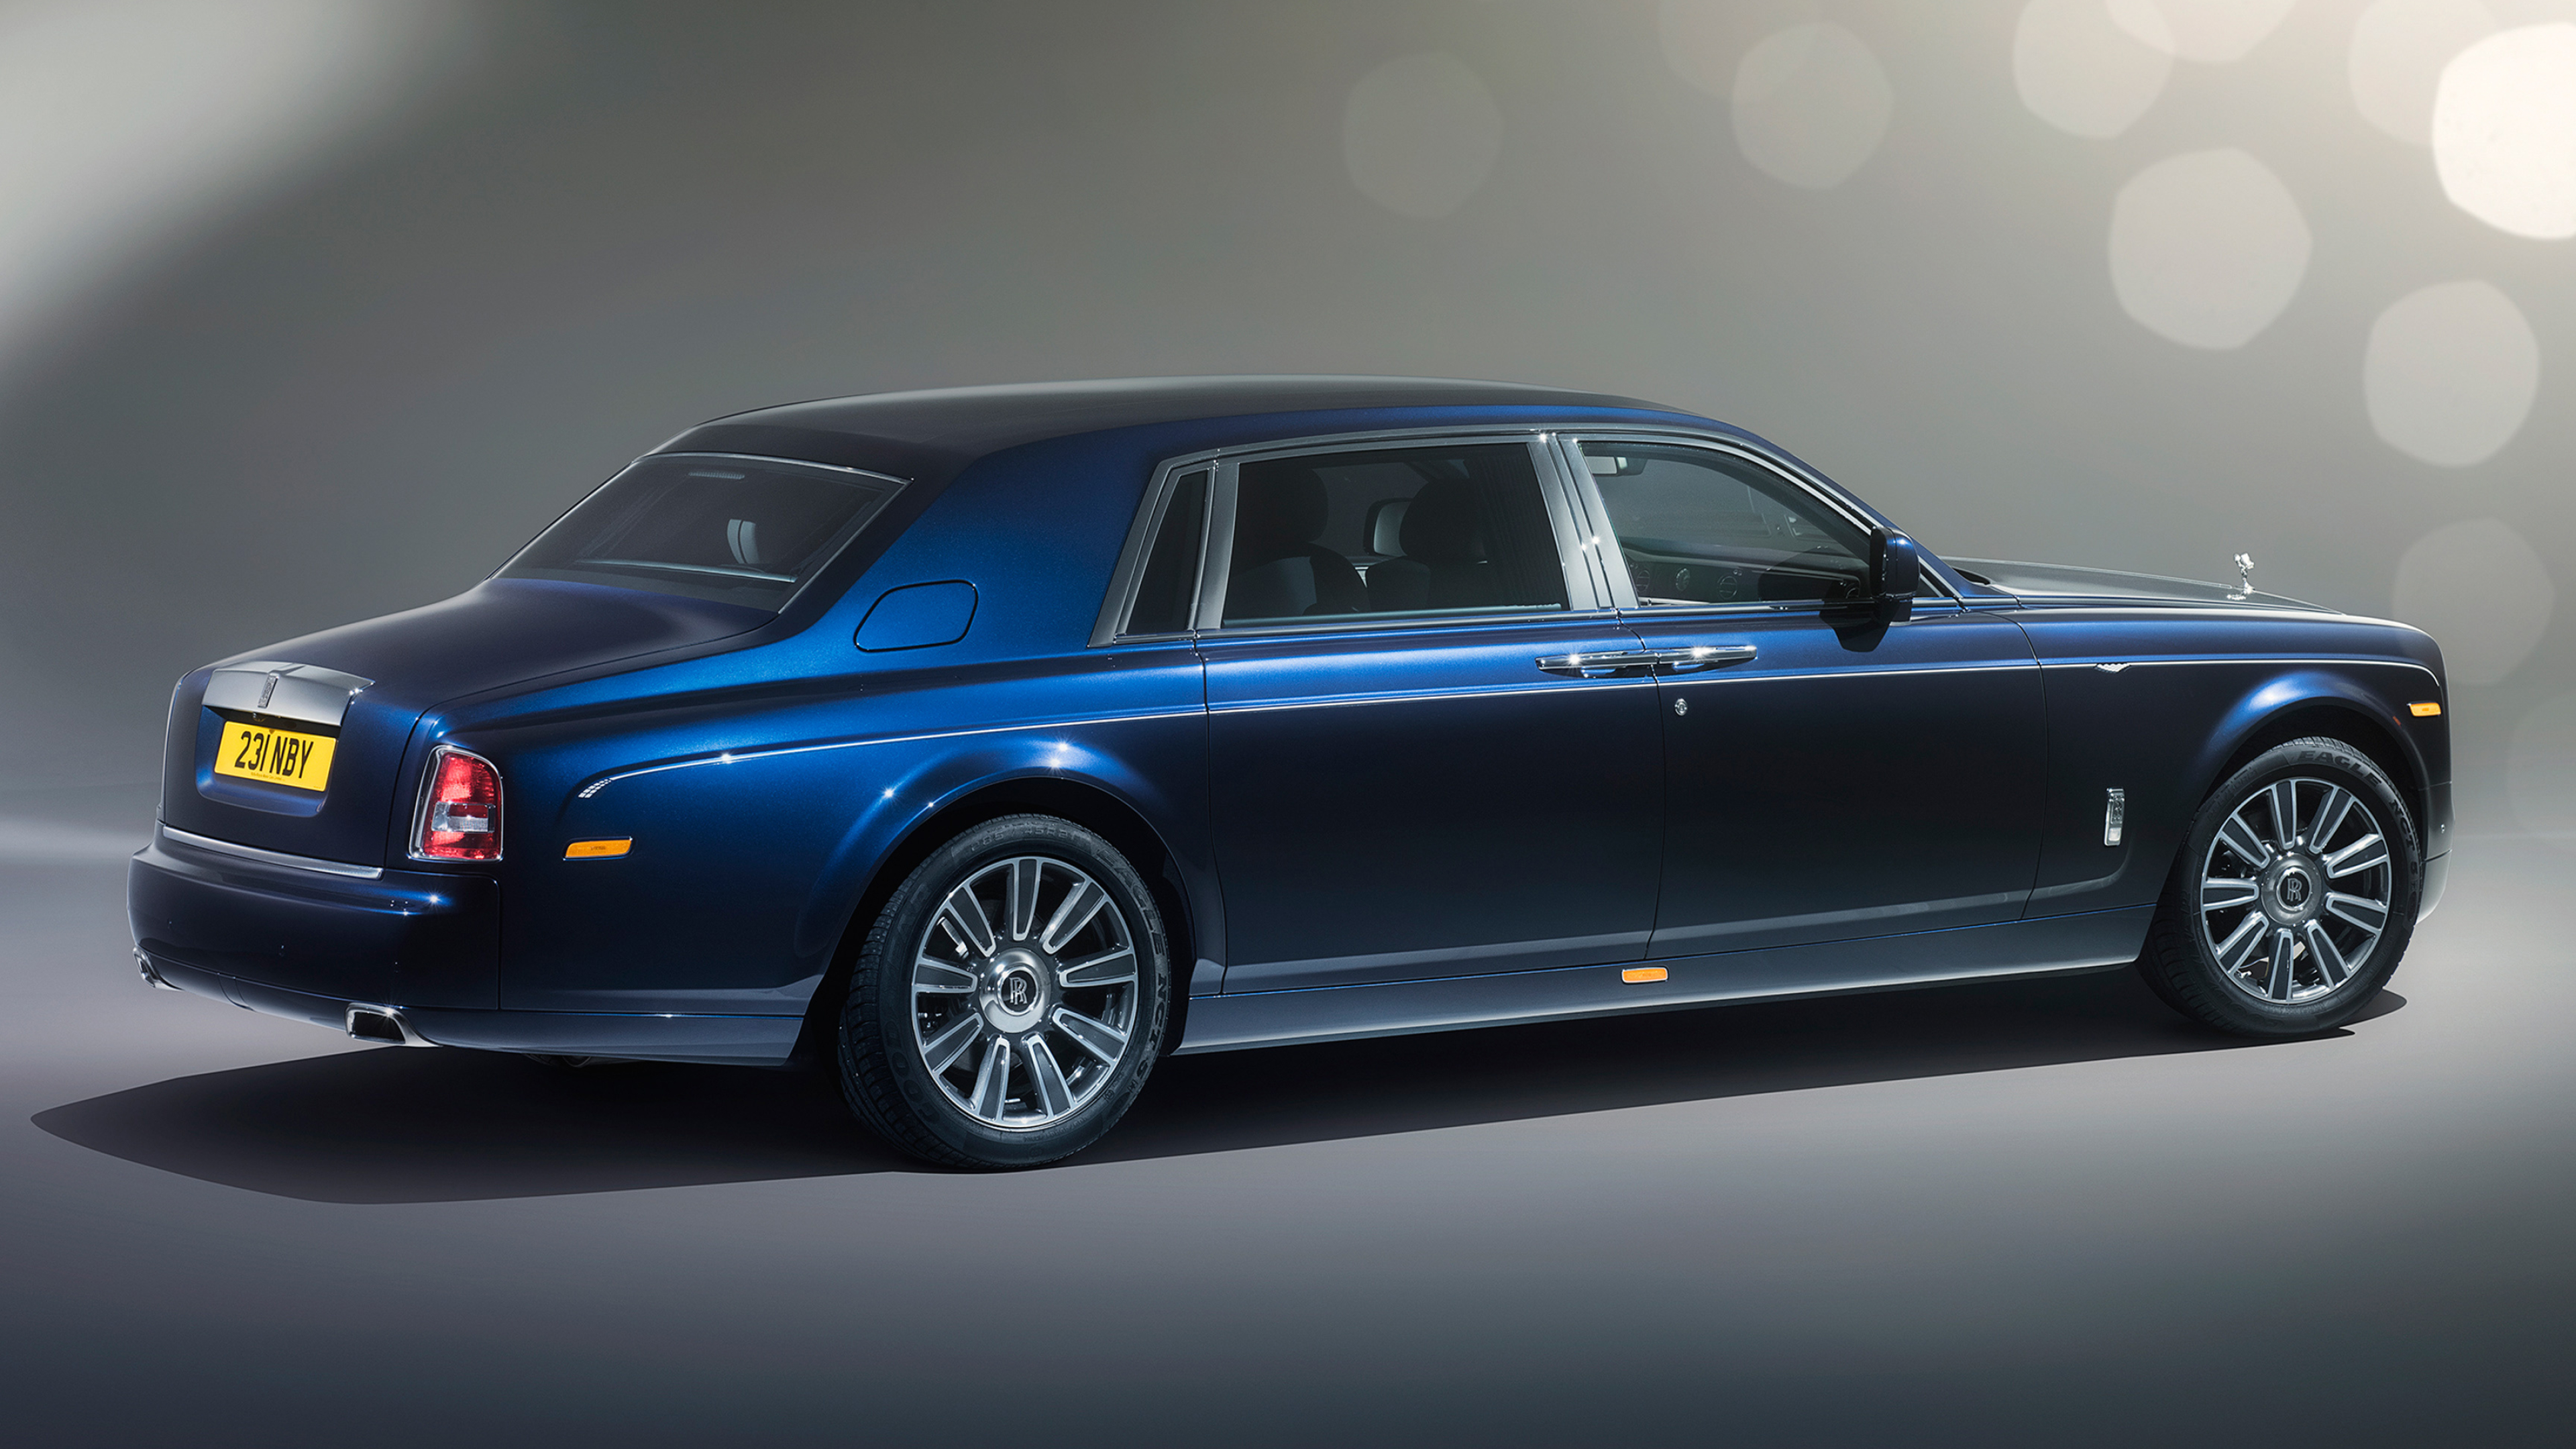 Rolls-Royce Phantom, Classic luxury, Cars desktop wallpapers, 4k Ultra HD, 3840x2160 4K Desktop